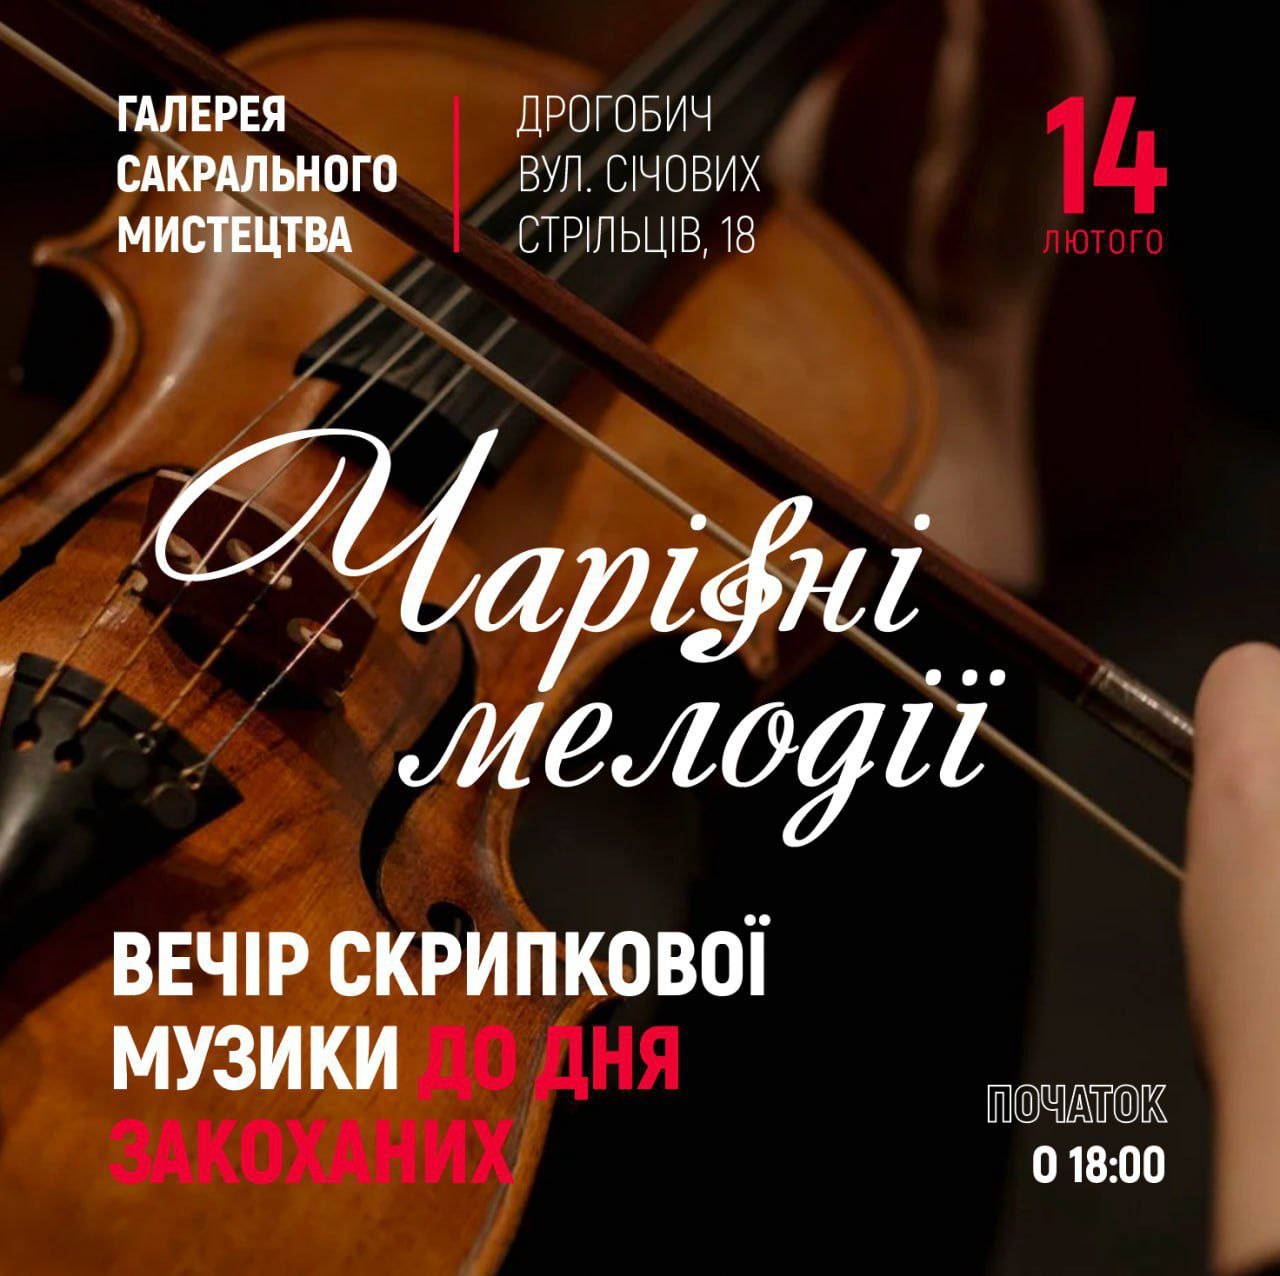 Чарівні мелодії: у Дрогобичі запрошують на вечір скрипкової музики